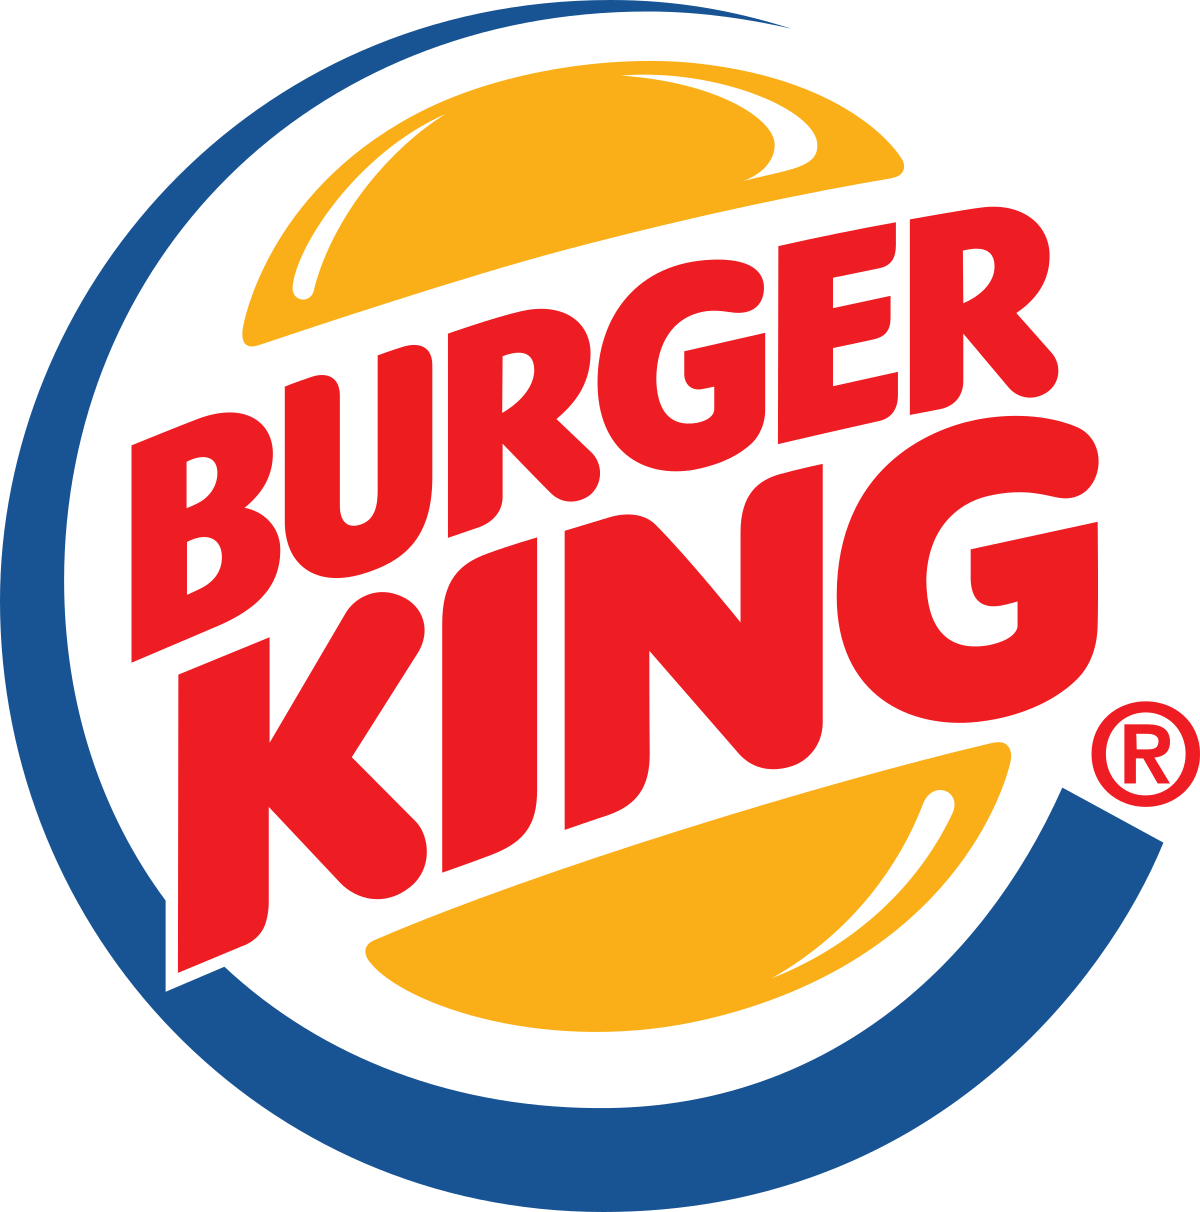 BK Logo - Burger King